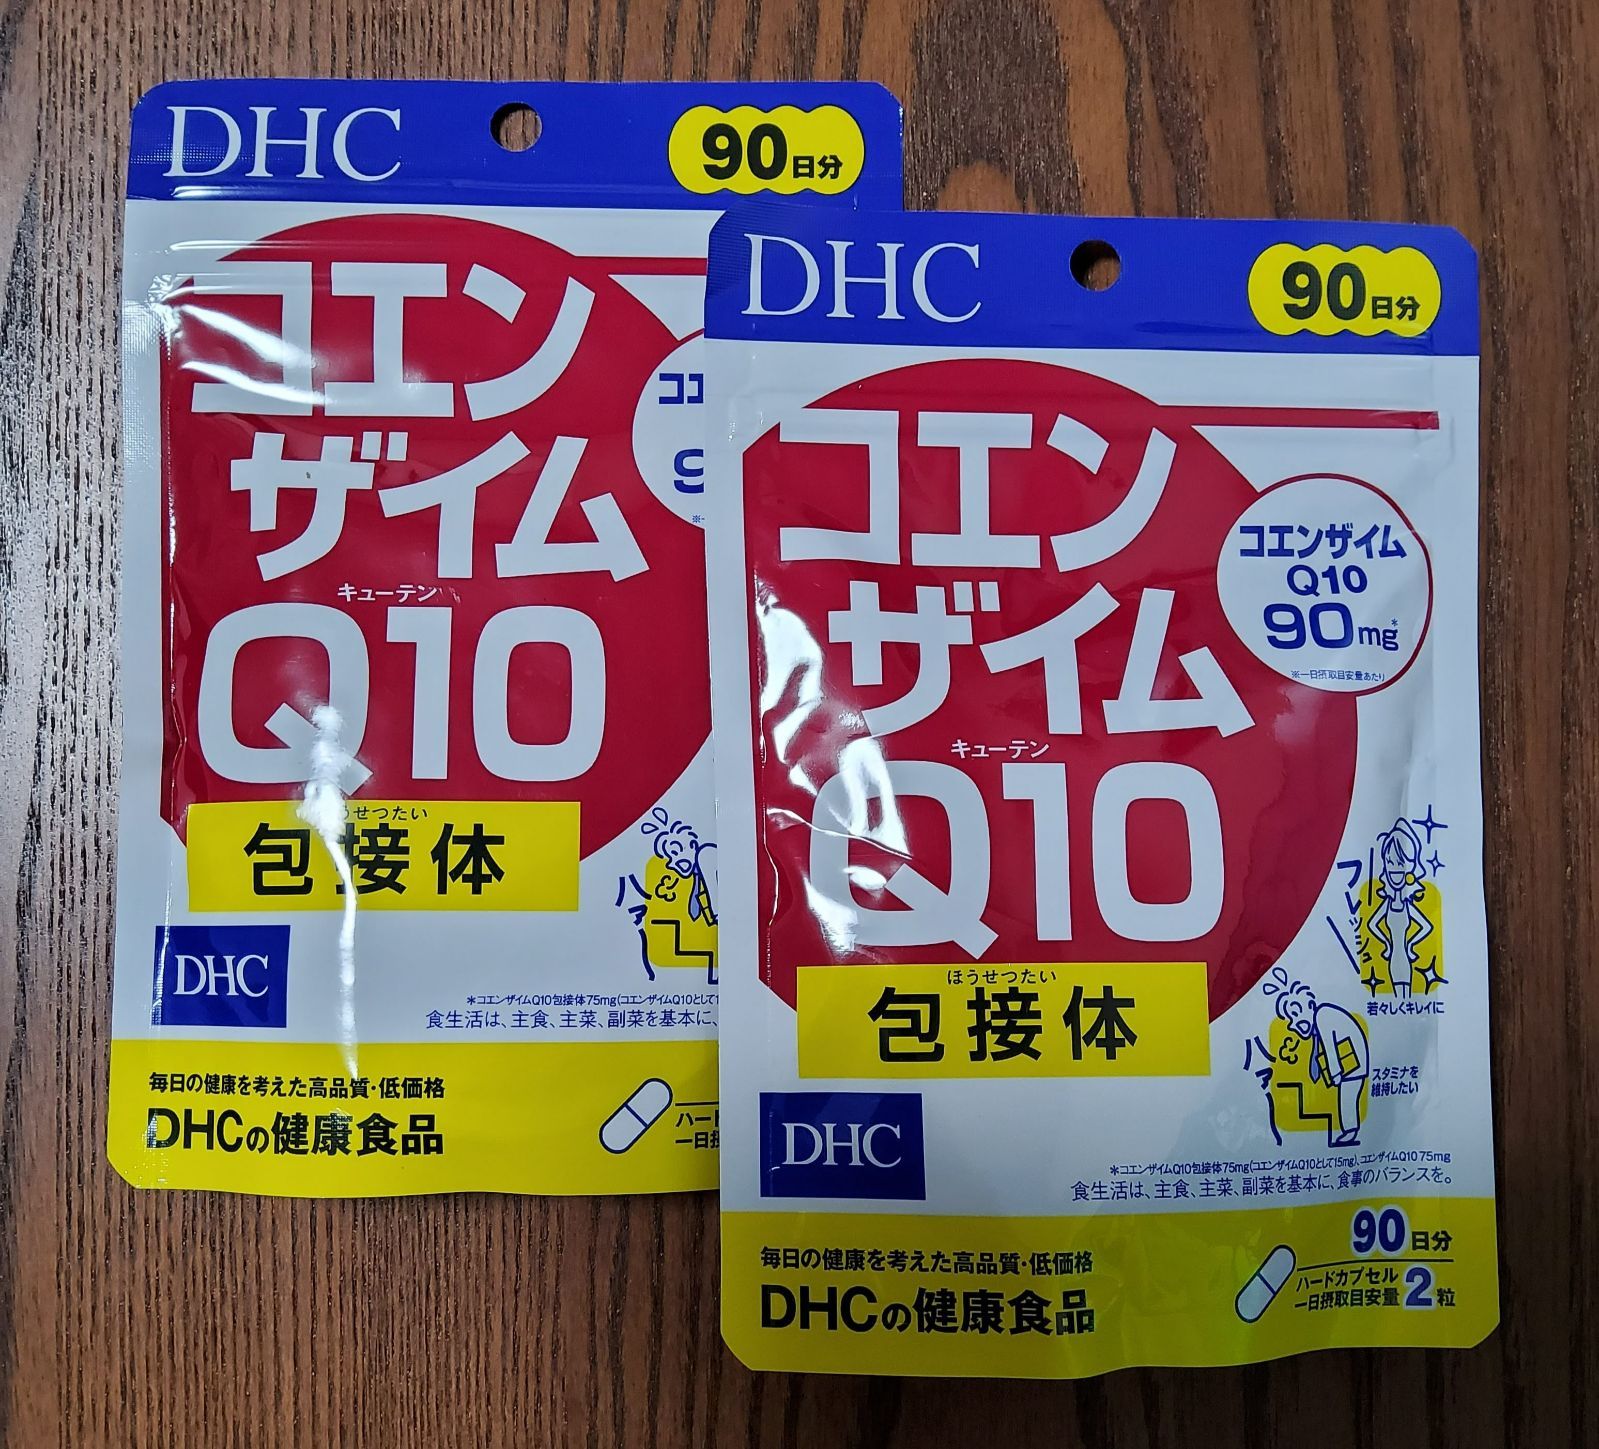 爆安プライス DHC コエンザイムQ10 Q10 コエンザイム 包接体 90日分 90日分X10 徳用 健康用品